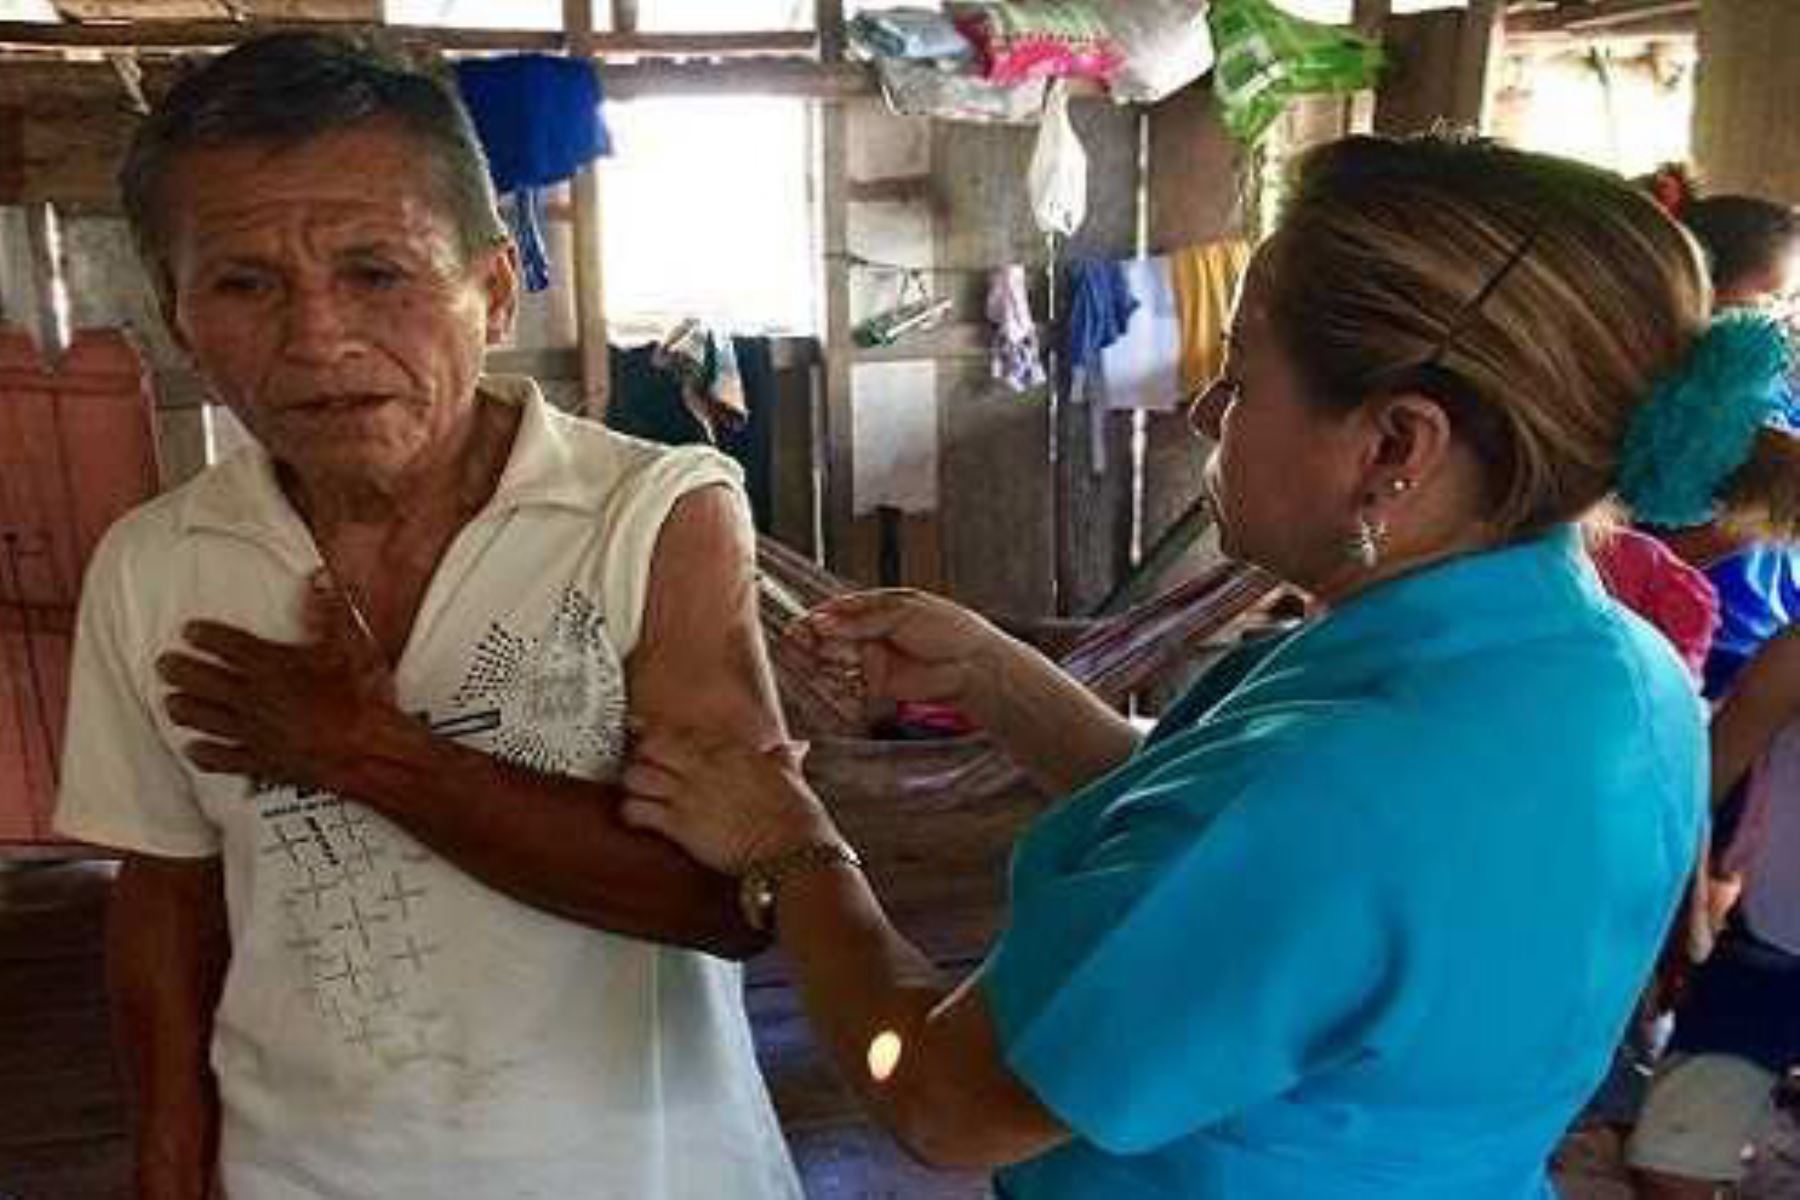 El Ministerio de Salud (Minsa) aplicó durante el 2017 un total de 87,364 dosis de vacunas contra la rabia a pobladores que residen en 651 comunidades indígenas de la selva peruana expuestos a la rabia silvestre, trasmitida principalmente por murciélagos, informó la Estrategia de Zoonosis del Ministerio de Salud.